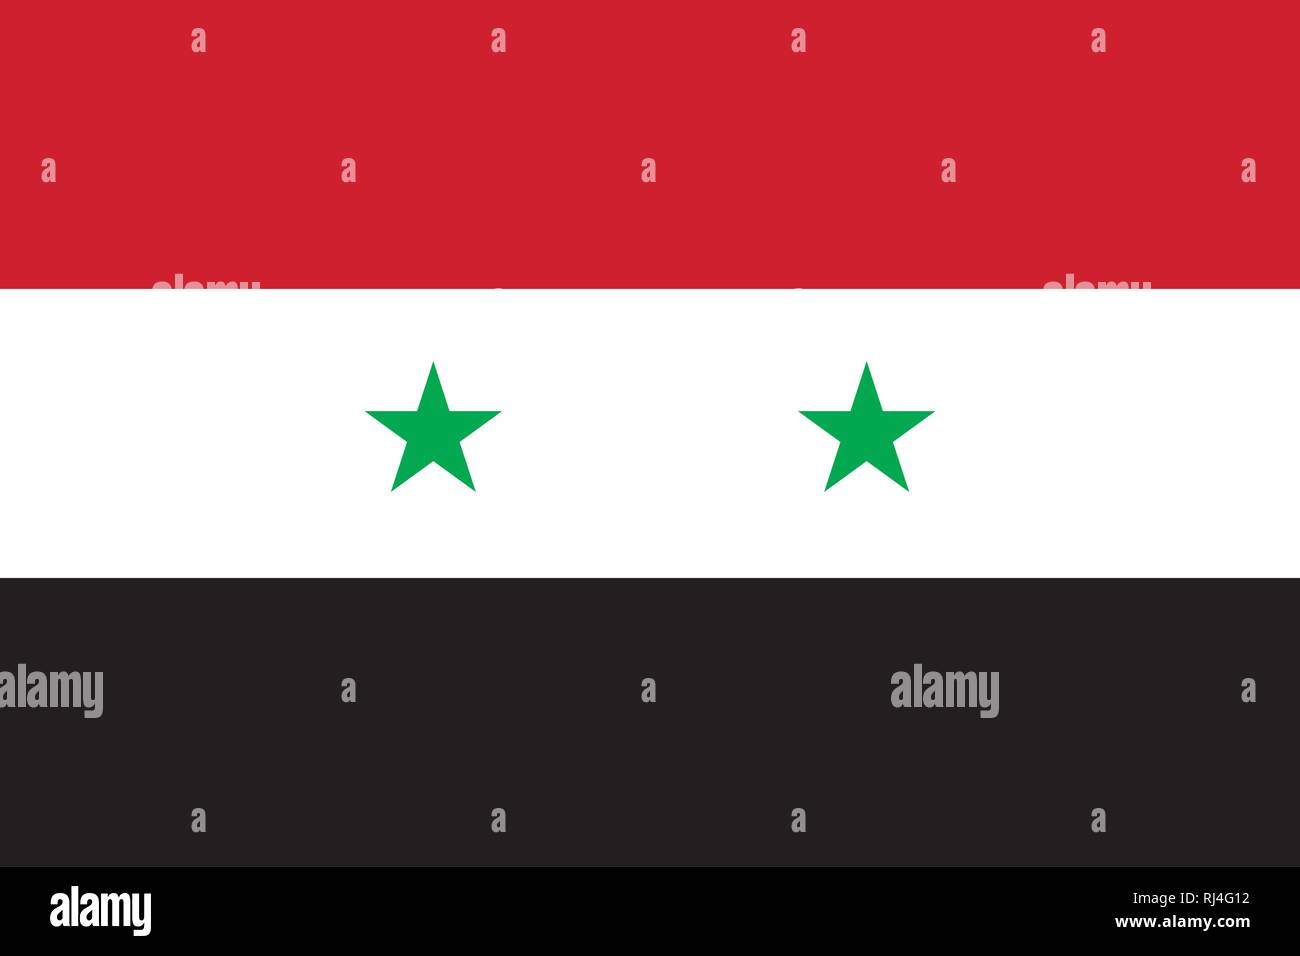 https://c8.alamy.com/compde/rj4g12/vektor-bild-von-syrien-flagge-auf-der-grundlage-der-offiziellen-und-dem-genauen-syrische-flagge-abmessungen-32-farben-186-c-weiss-schwarz-und-354-c-rj4g12.jpg